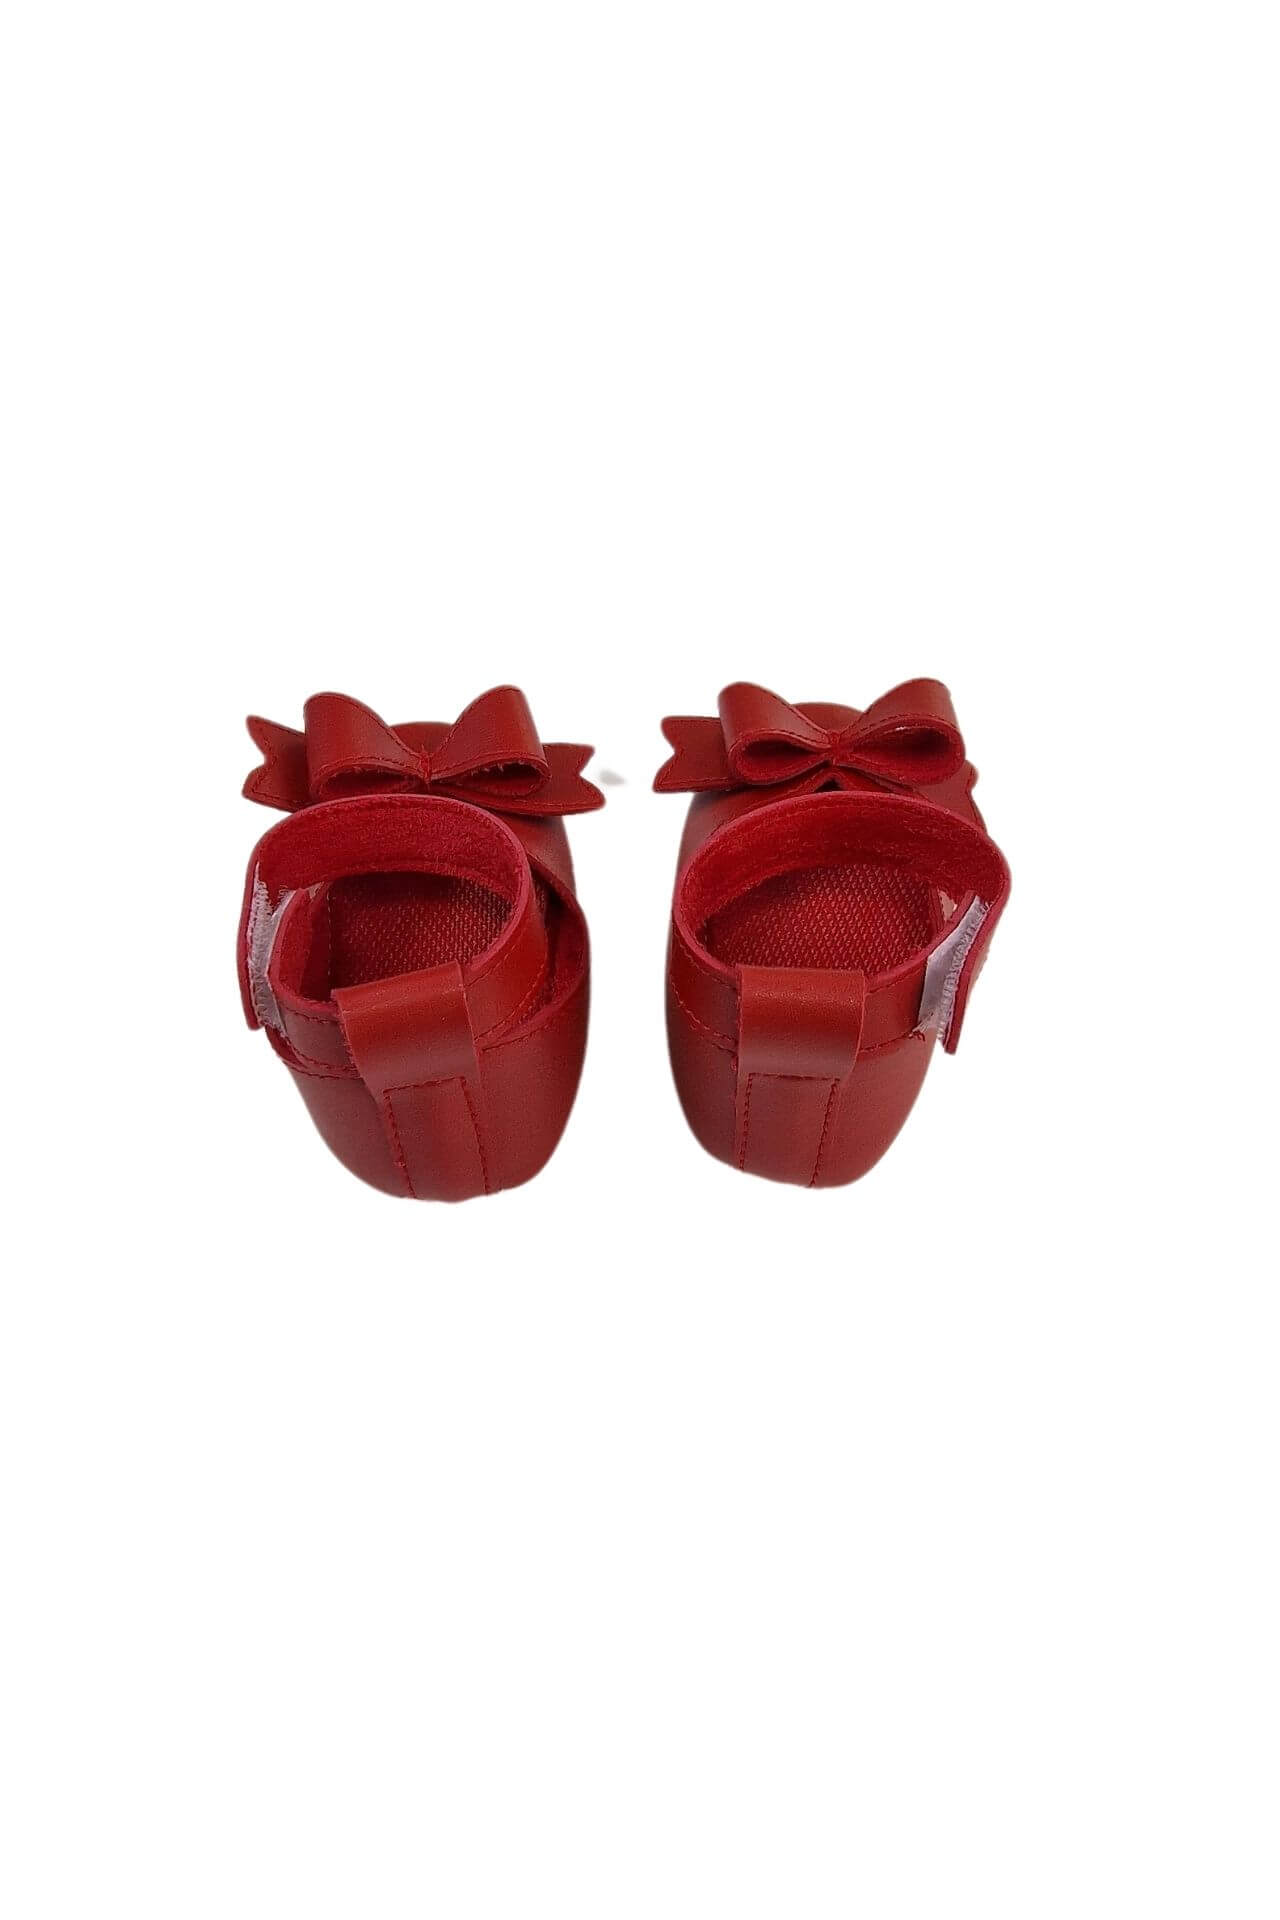 Παπούτσια Αγκαλιάς Δερματίνη Με Φιογκάκι W0338 (5)